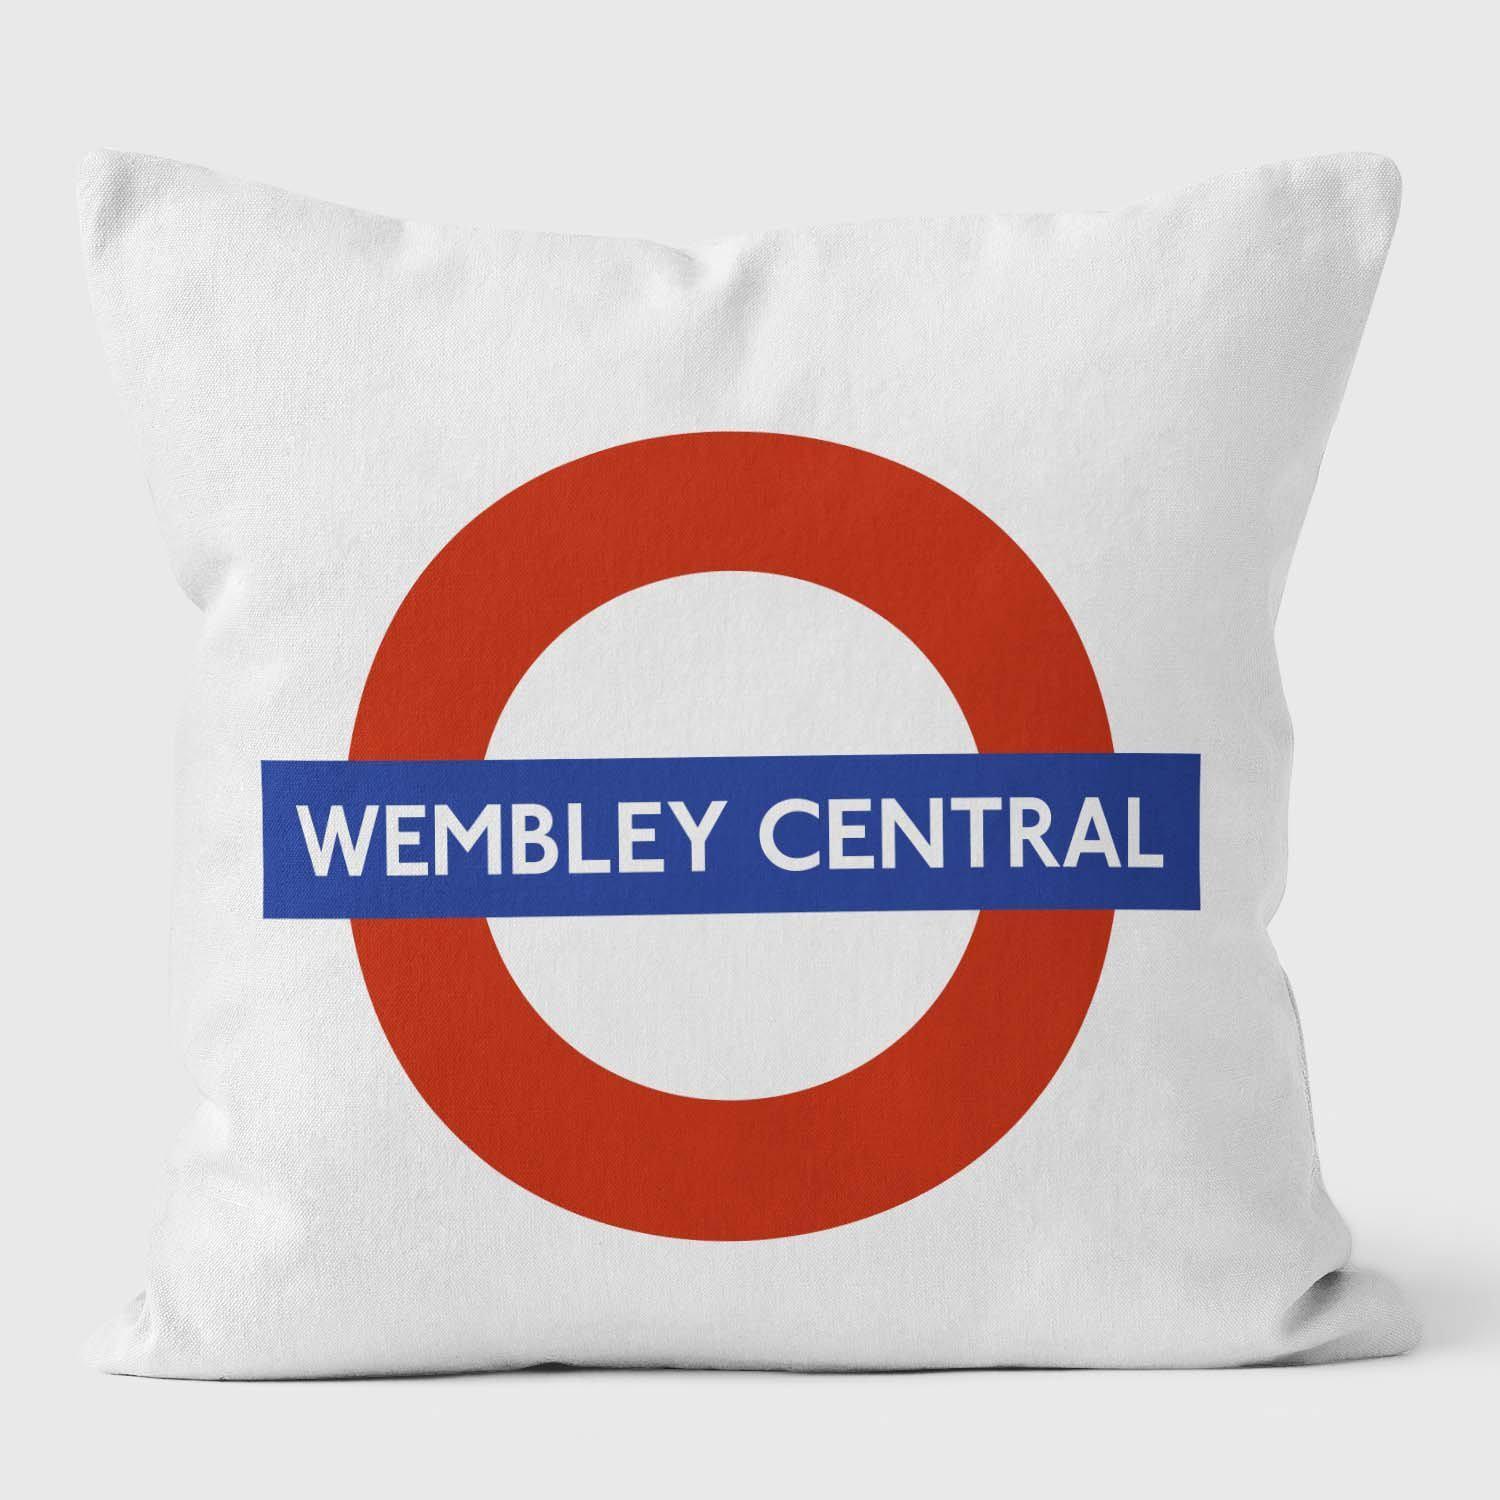 Wembley Central London Underground Tube Station Roundel Cushion - Handmade Cushions UK - WeLoveCushions